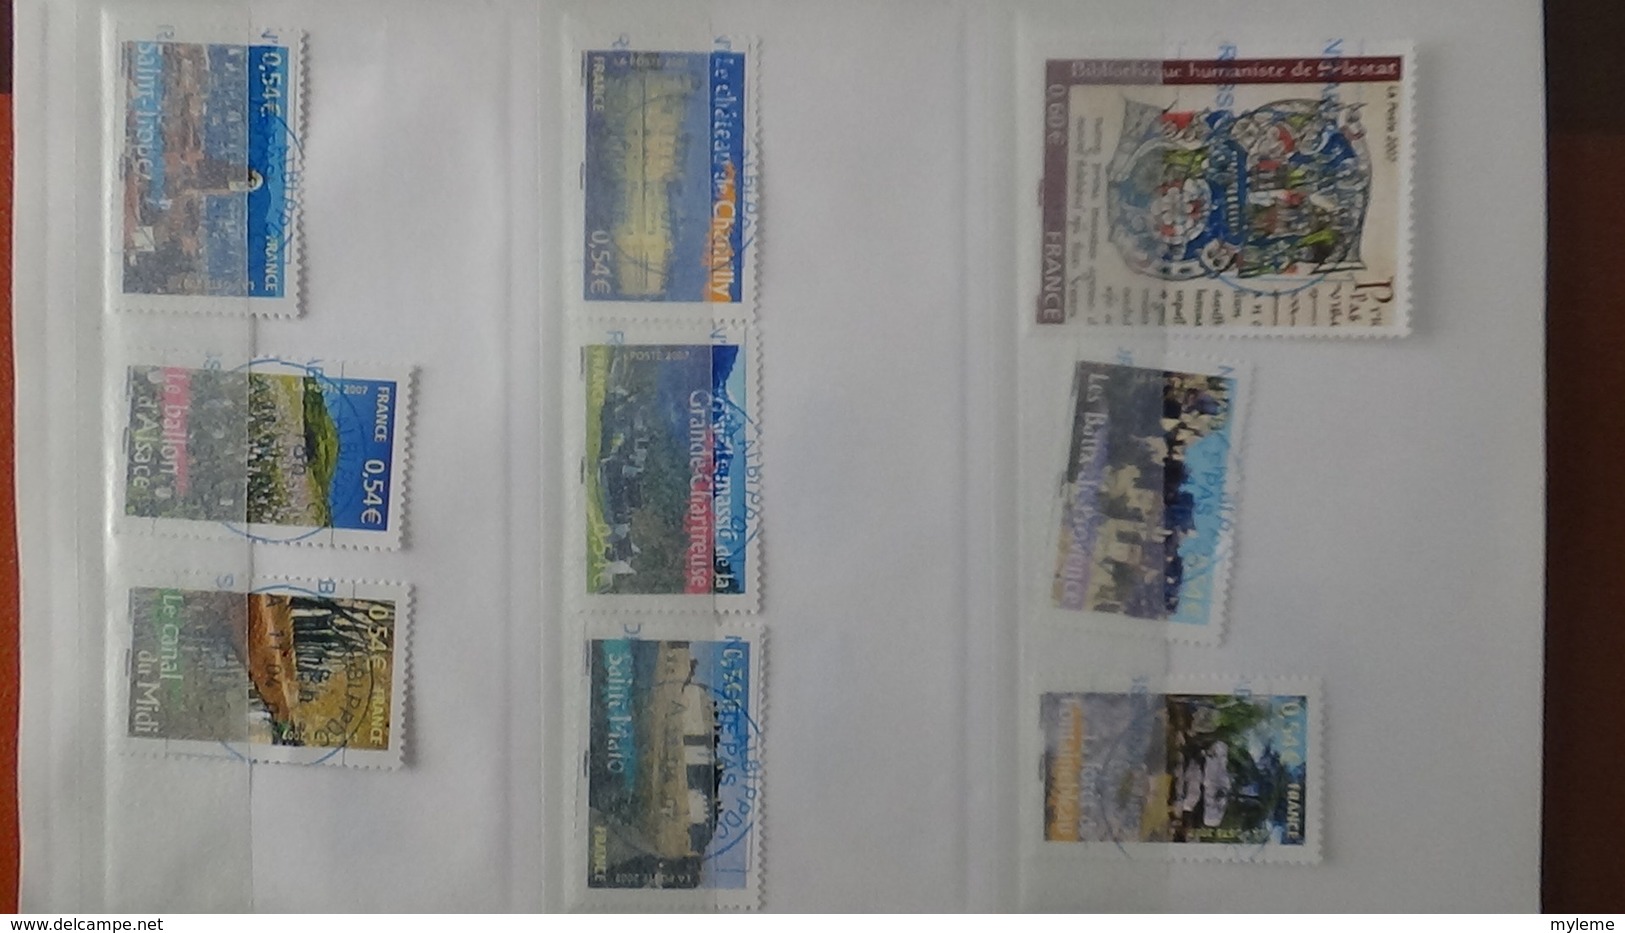 B410 Carnet à choix de timbres de France avec oblitérations rondes toutes BLEUES. Très sympa !!!